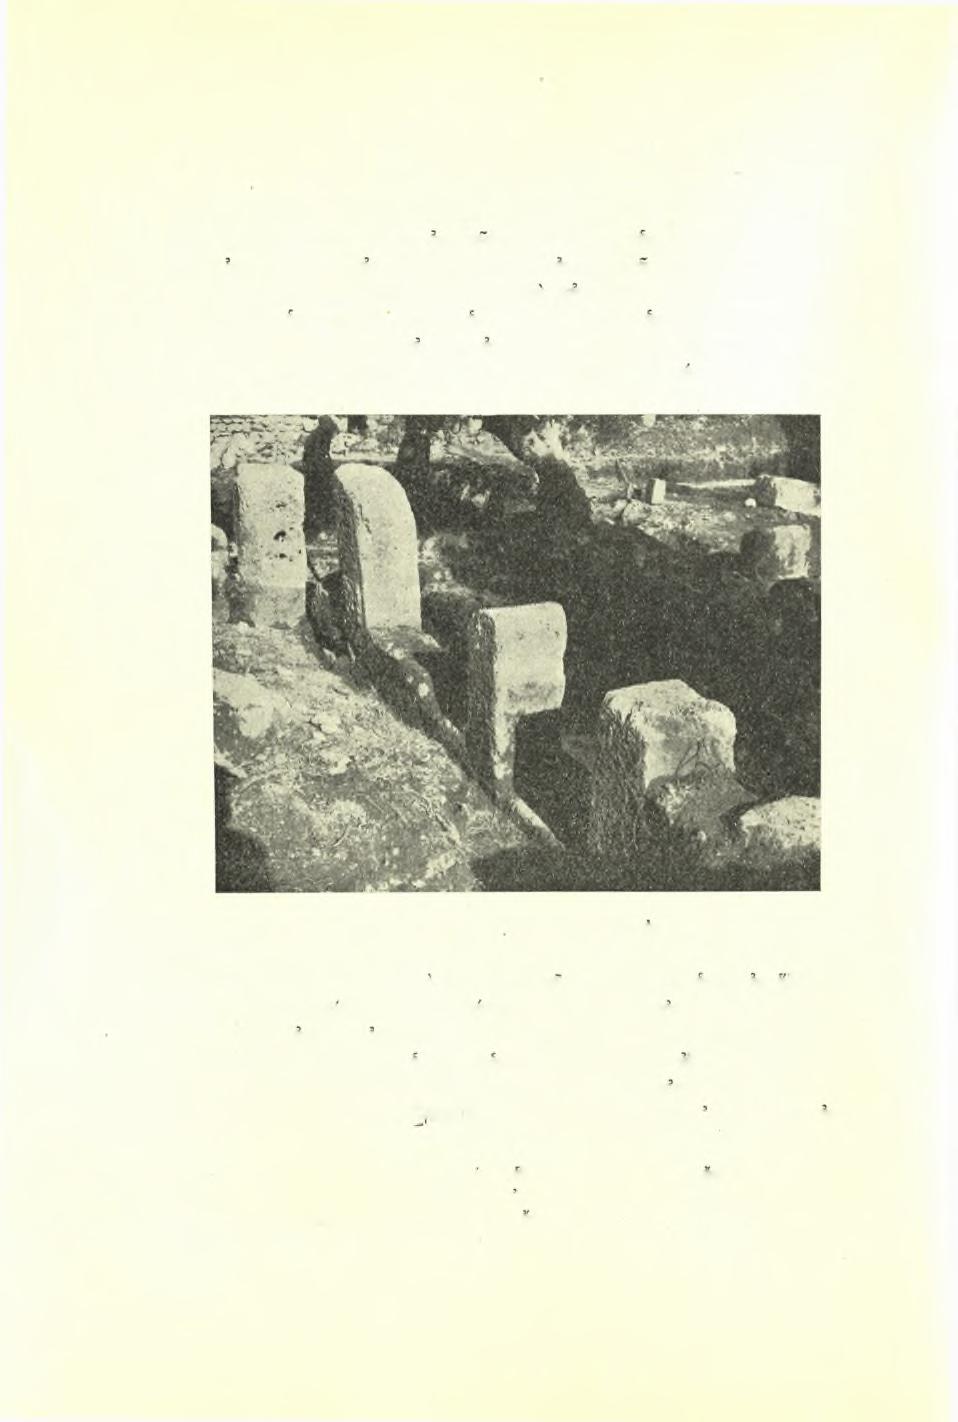 132 Πρακτικά τής Αρχαιολογικής Εταιρείας 1954 σιλικήν, δηλαδή περίπτωσιν σπανίαν διά τήν κυρίως Ελλάδα 1.